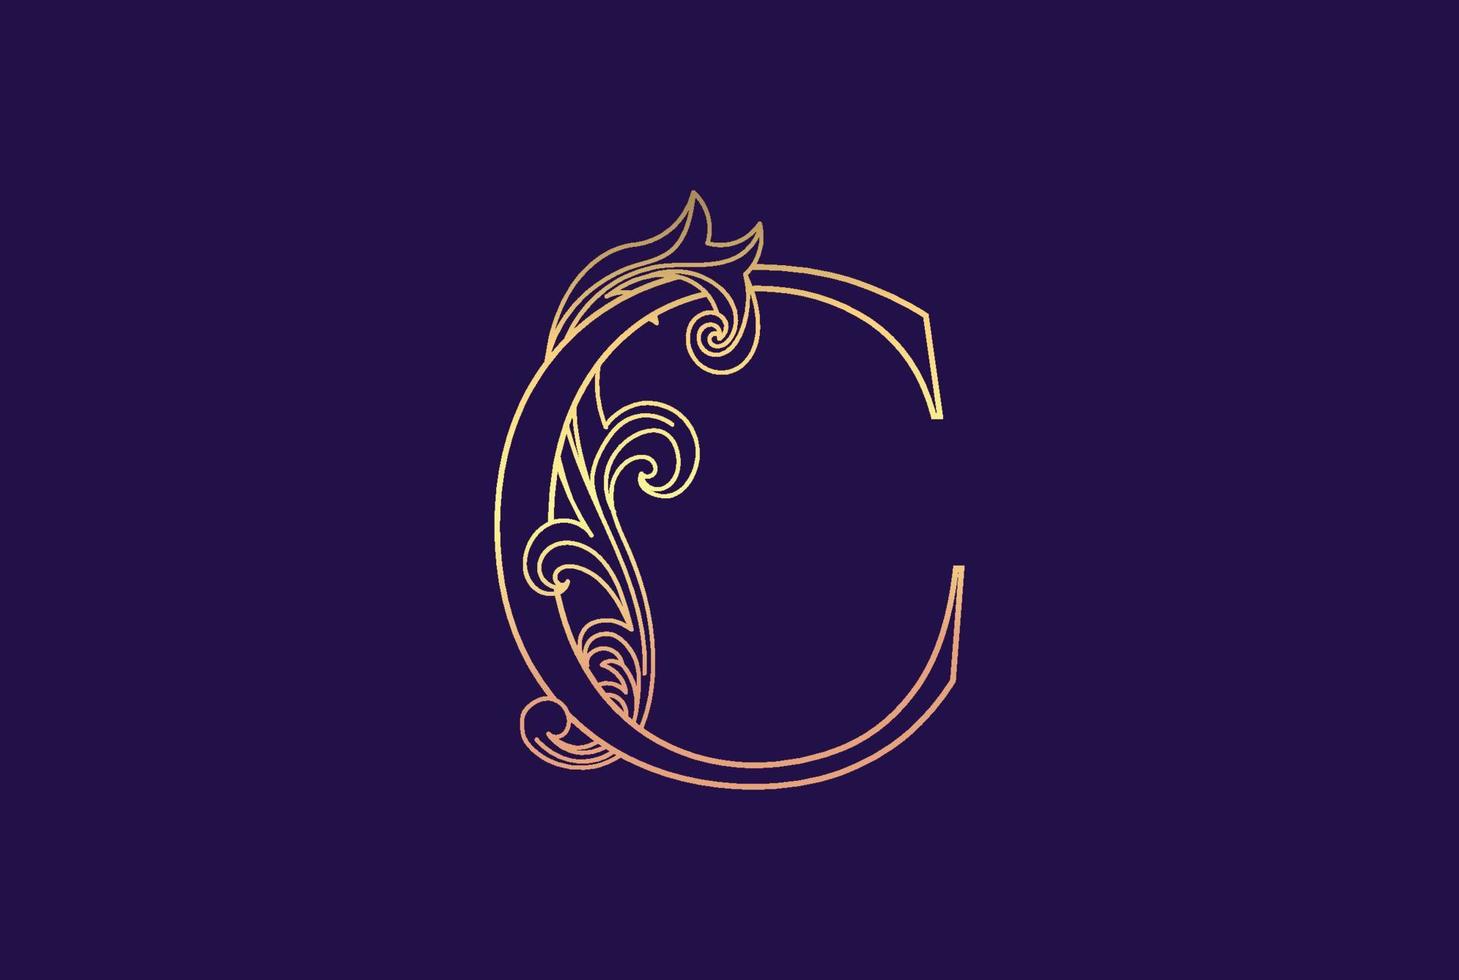 letra inicial de lujo elegante dorado c con logotipo de adorno floral en espiral y fondo violeta oscuro vector